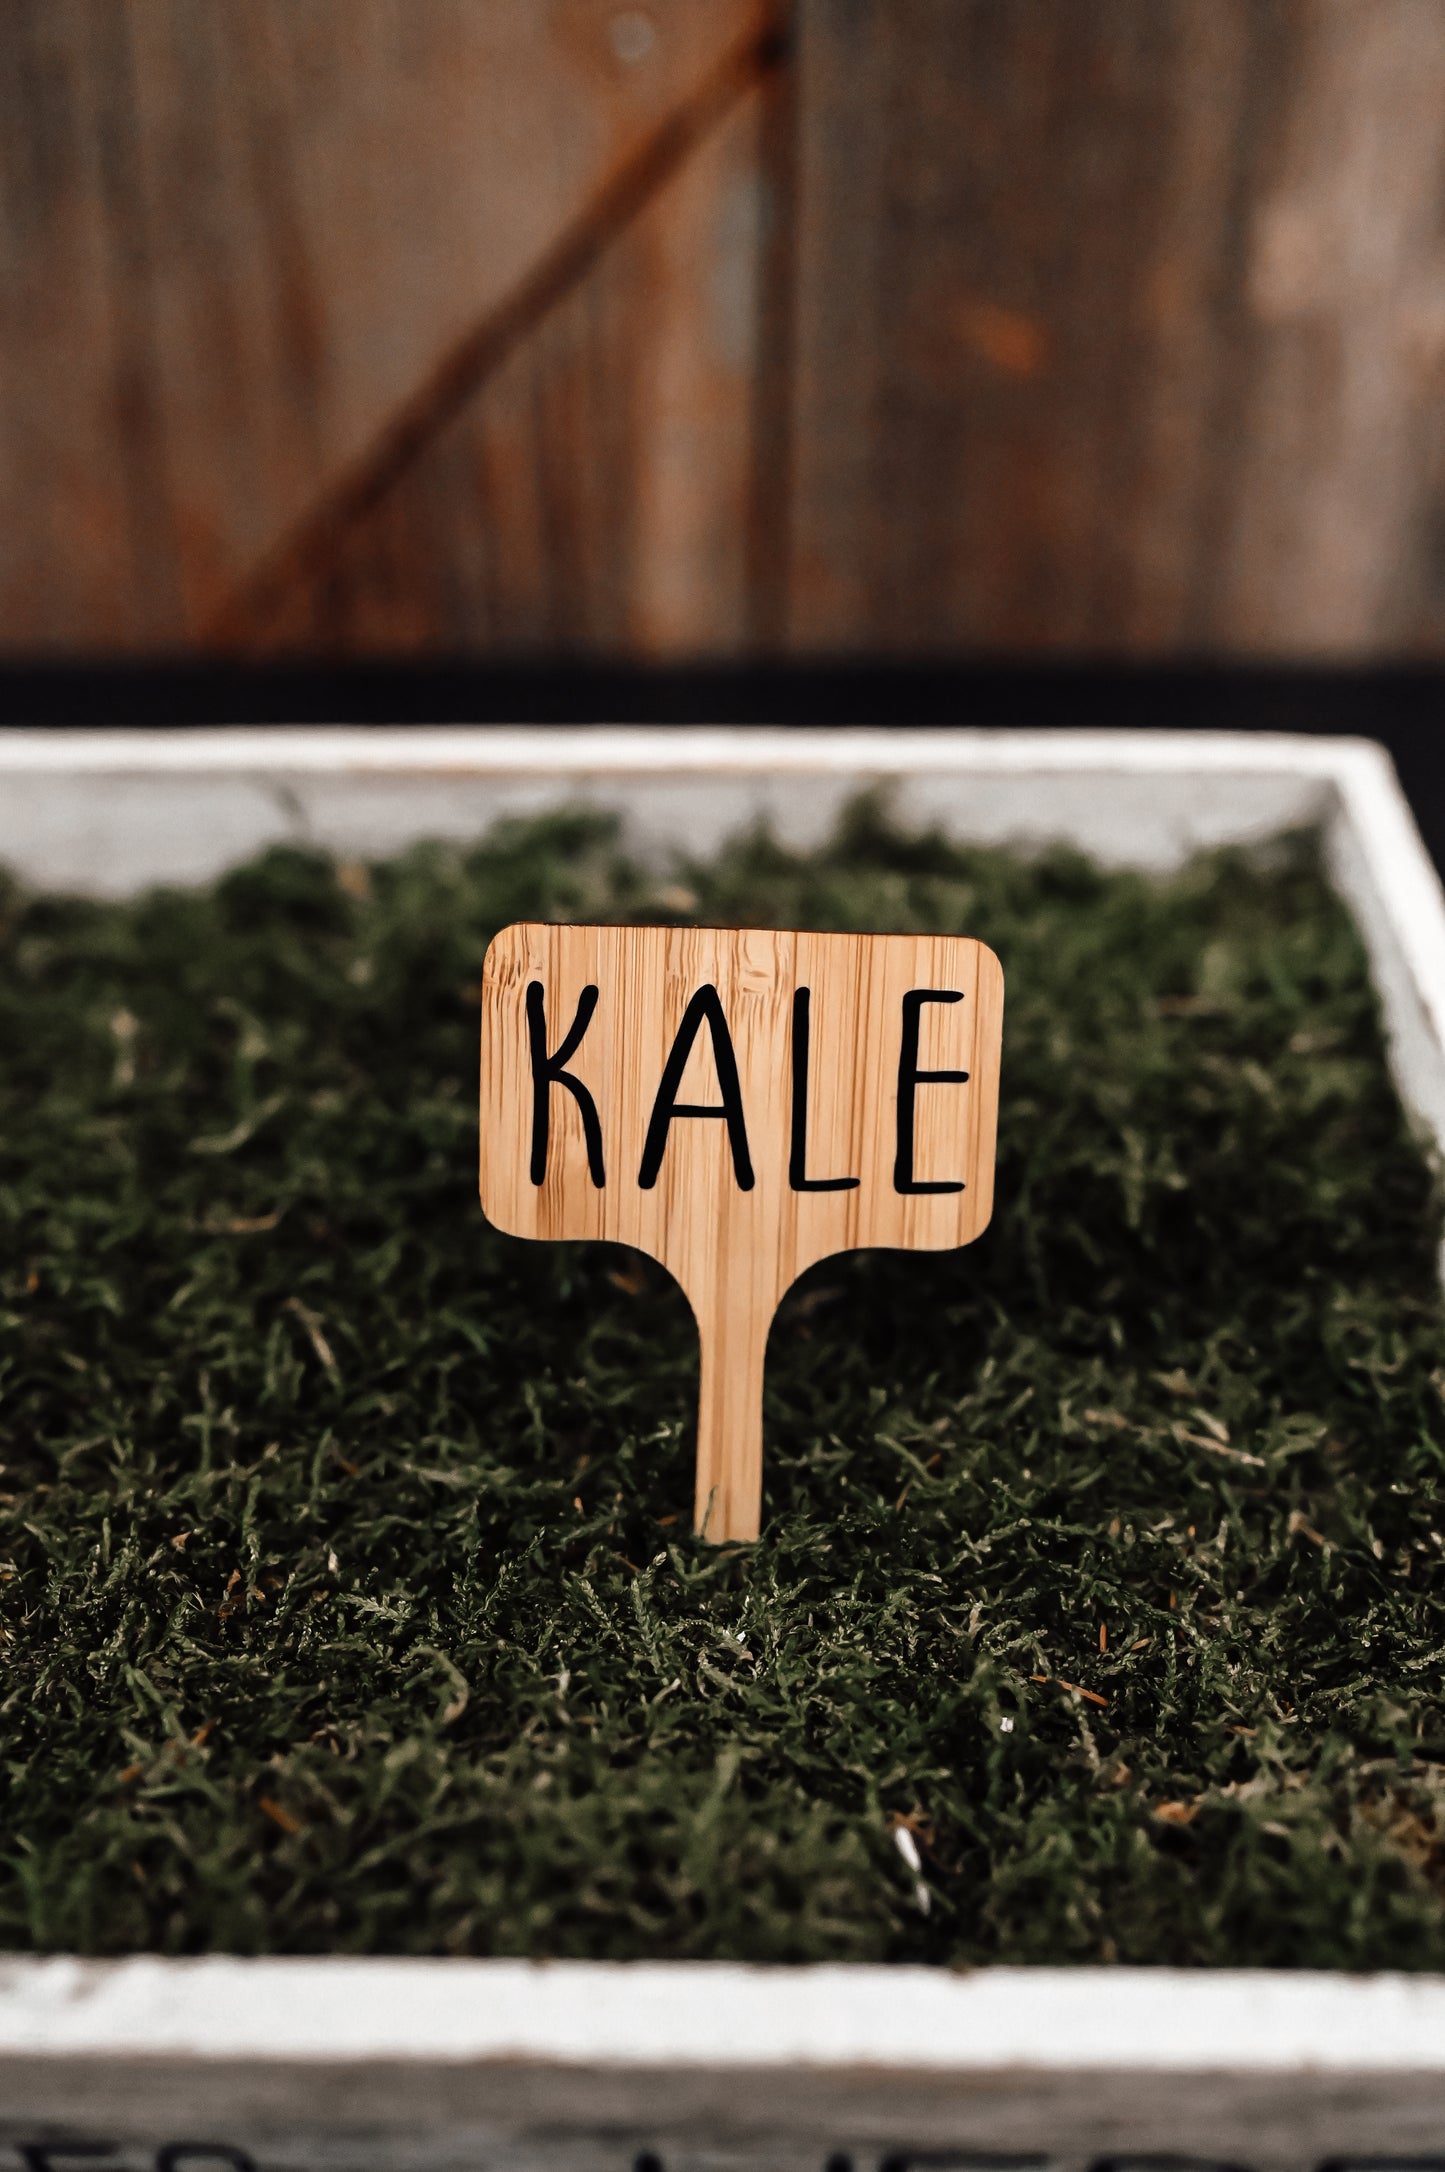 kale-garden-stake